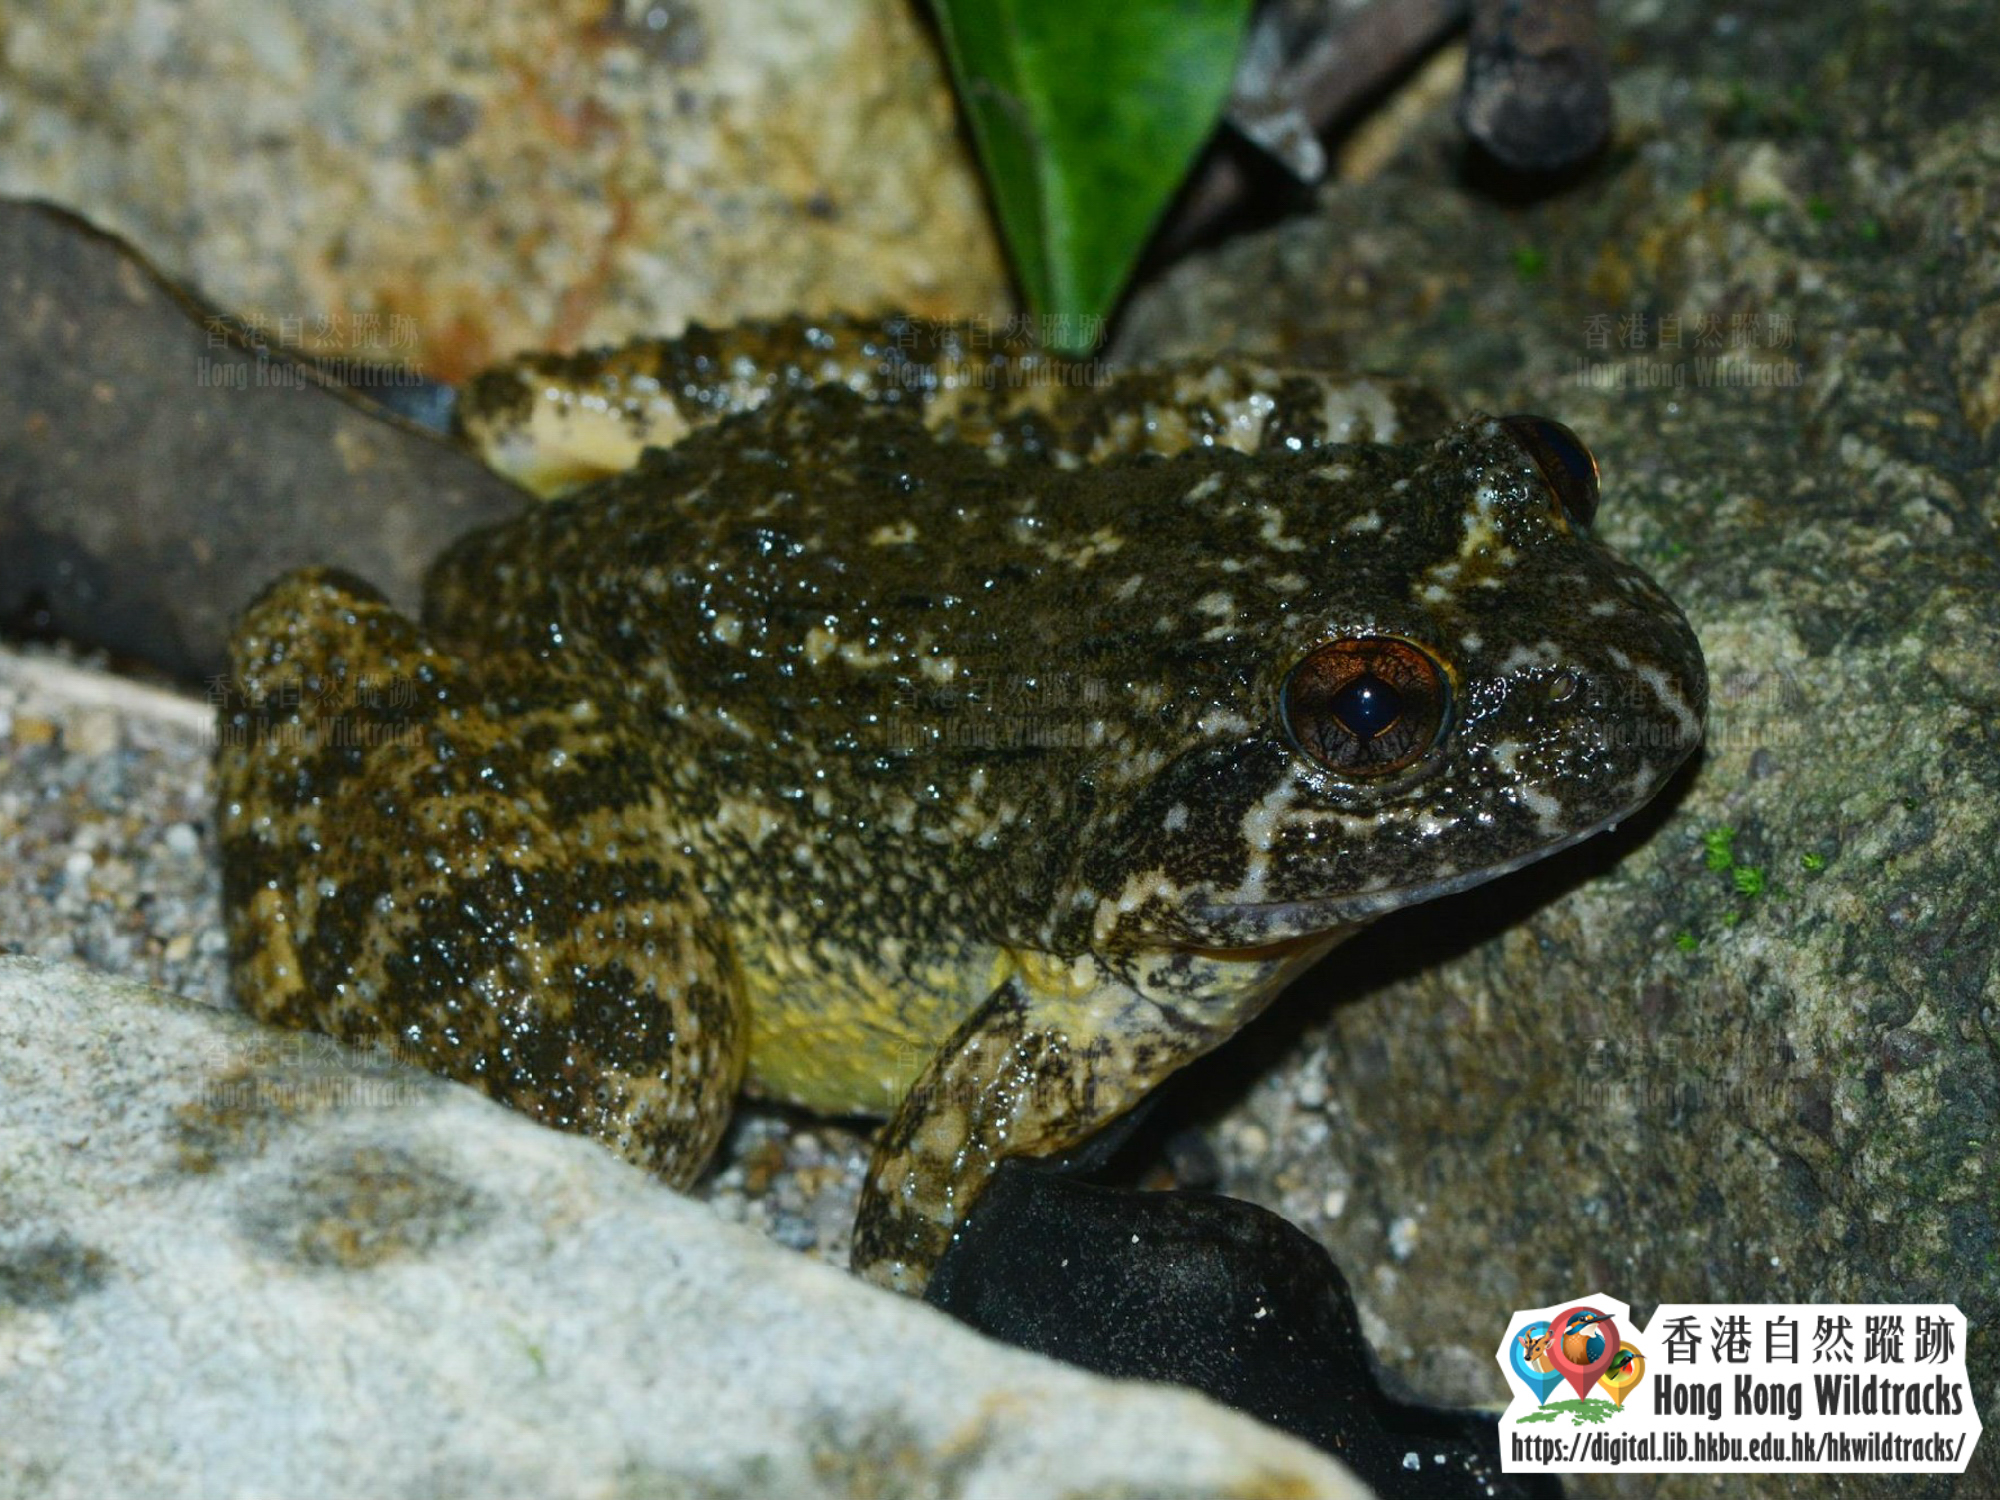 小棘蛙 Lesser Spiny Frog